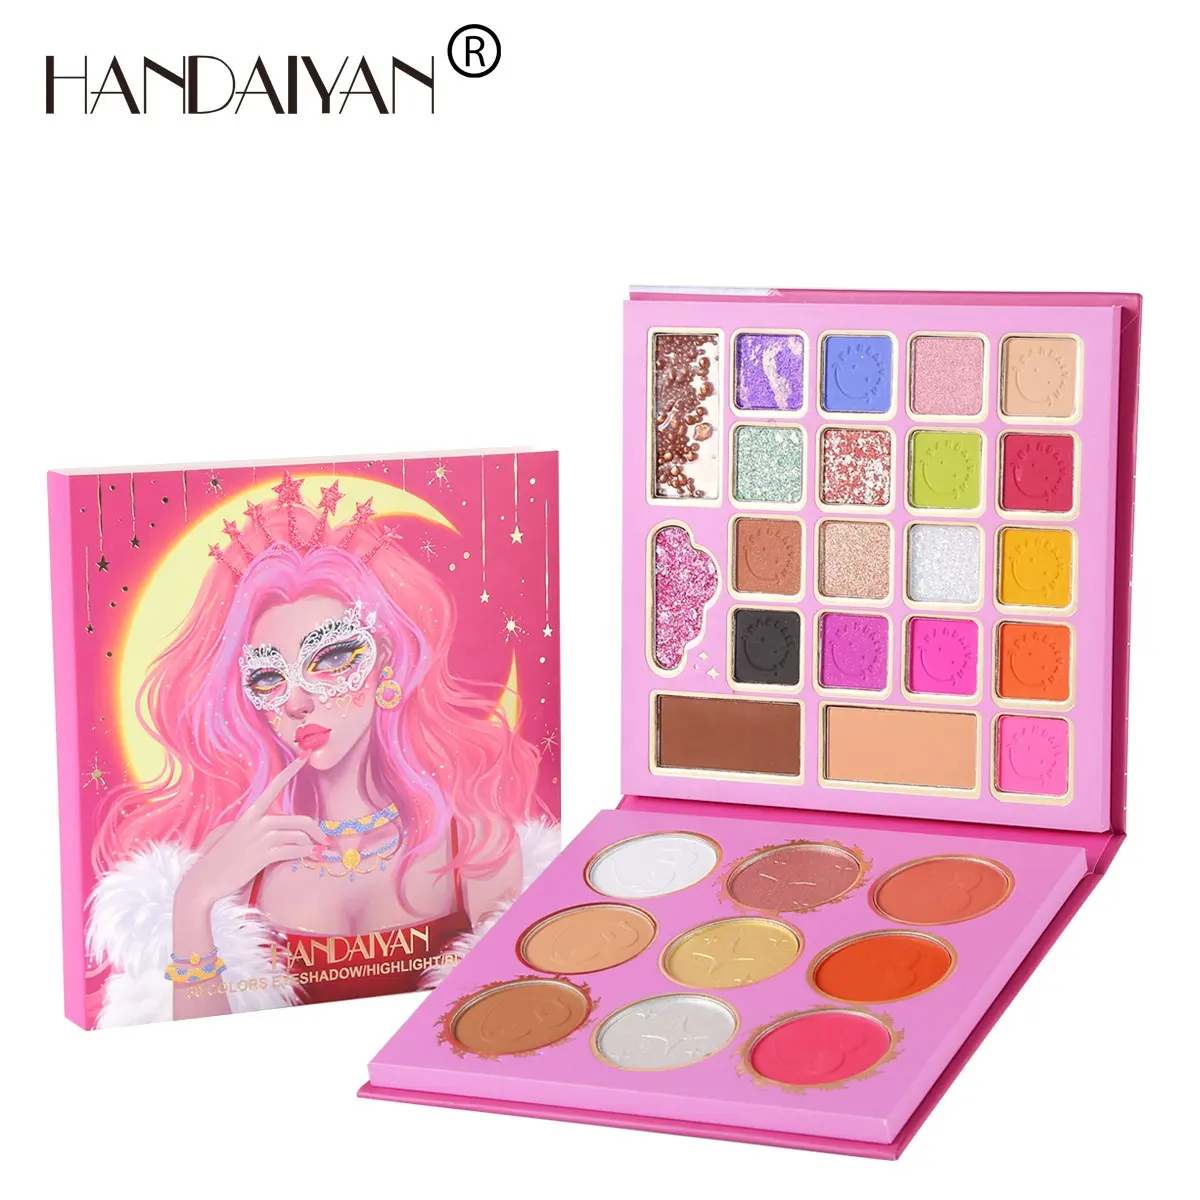 Handaiyan 30 màu sắc cô gái Eyeshadow Highlighter Blusher Brow bột mỹ phẩm trang điểm Palette bán chạy nhất